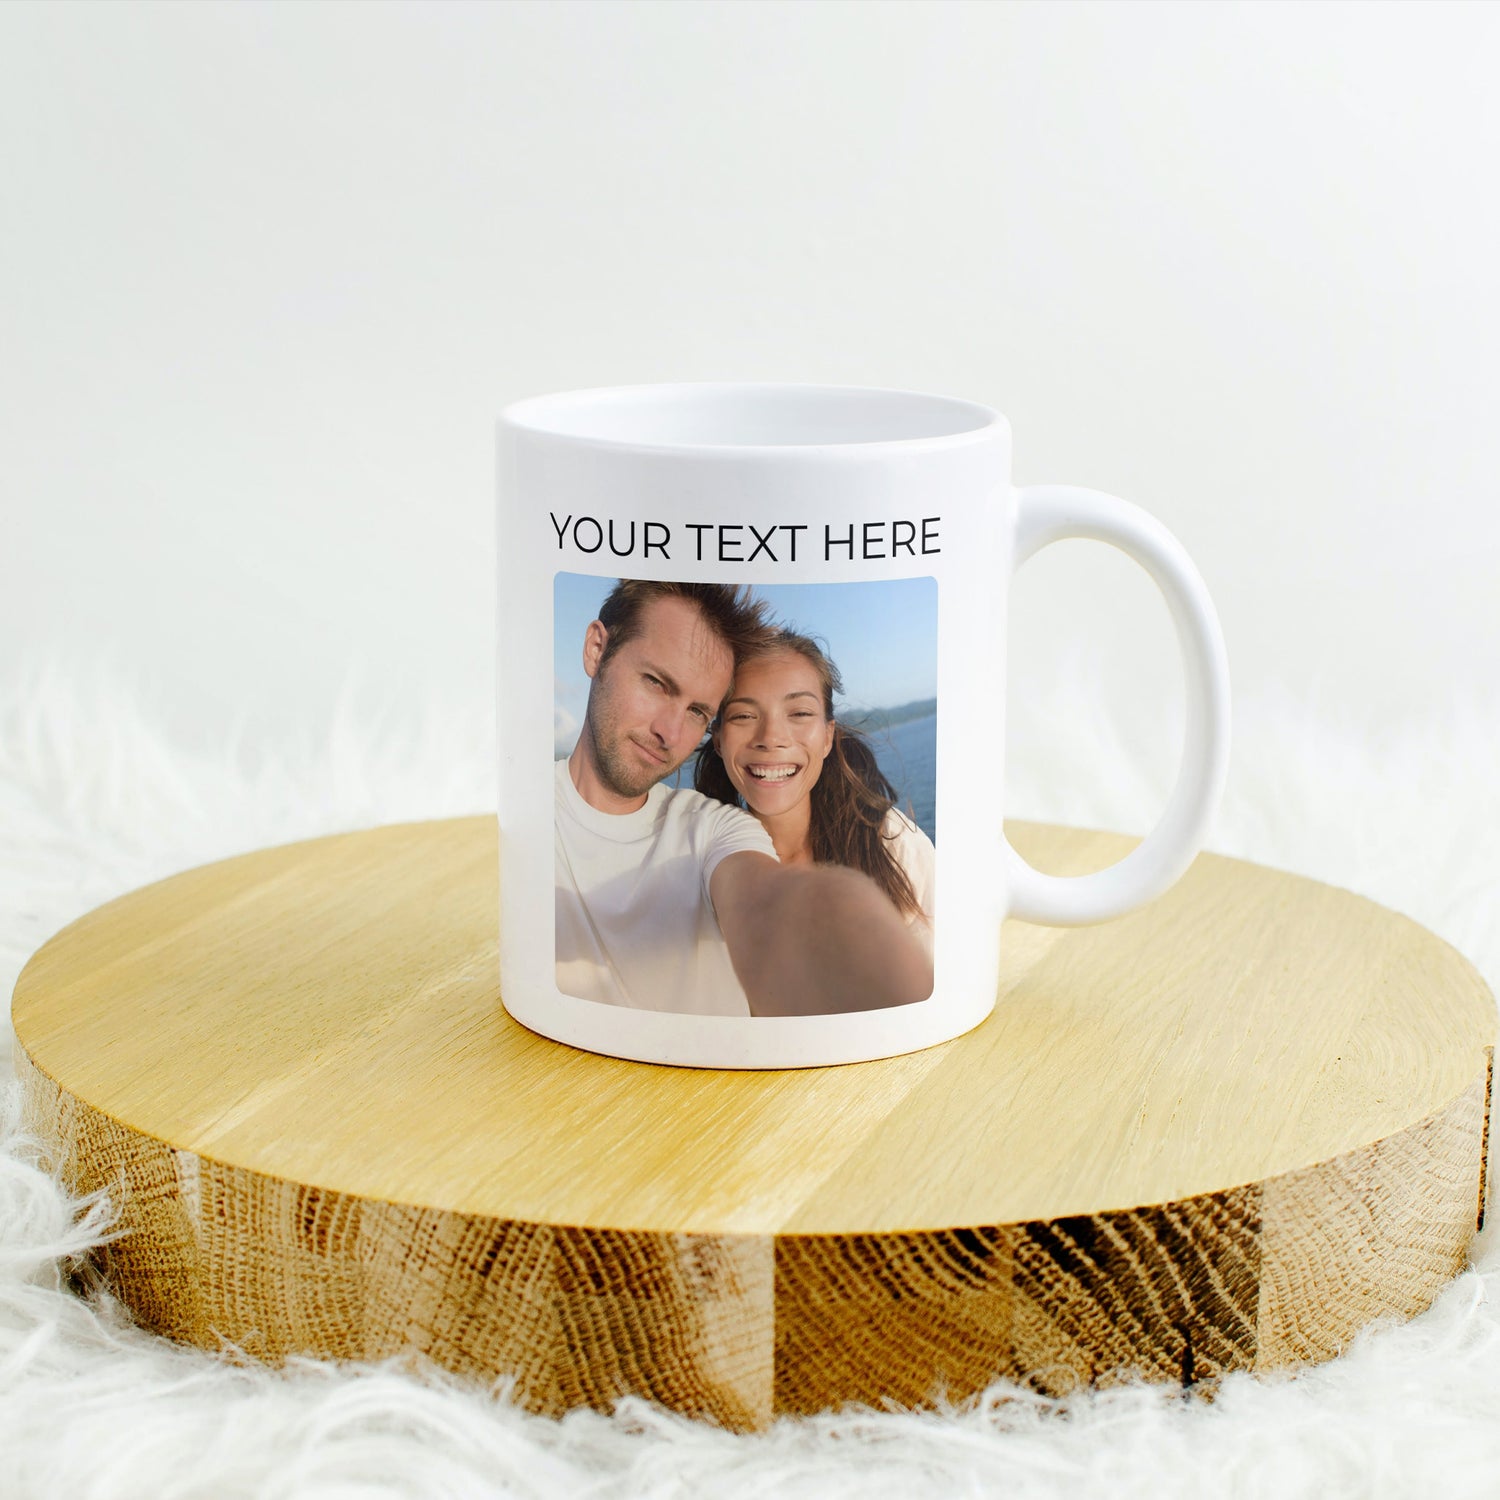 Personalised photo mug